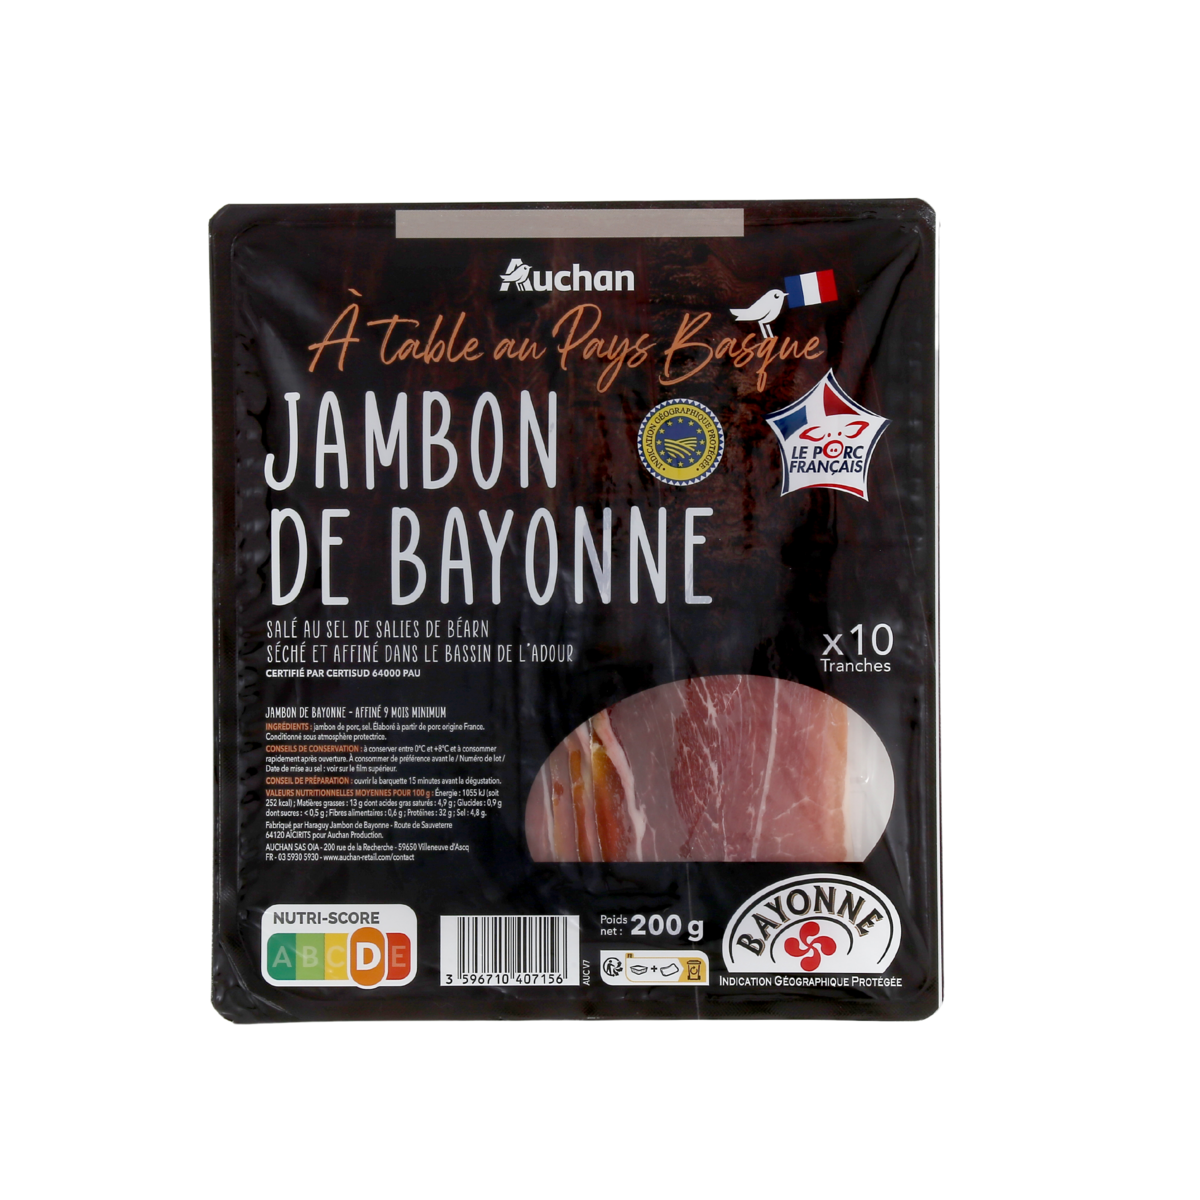  JAMBON DE BAYONNE IGP À TABLE EN FRANCE(1)